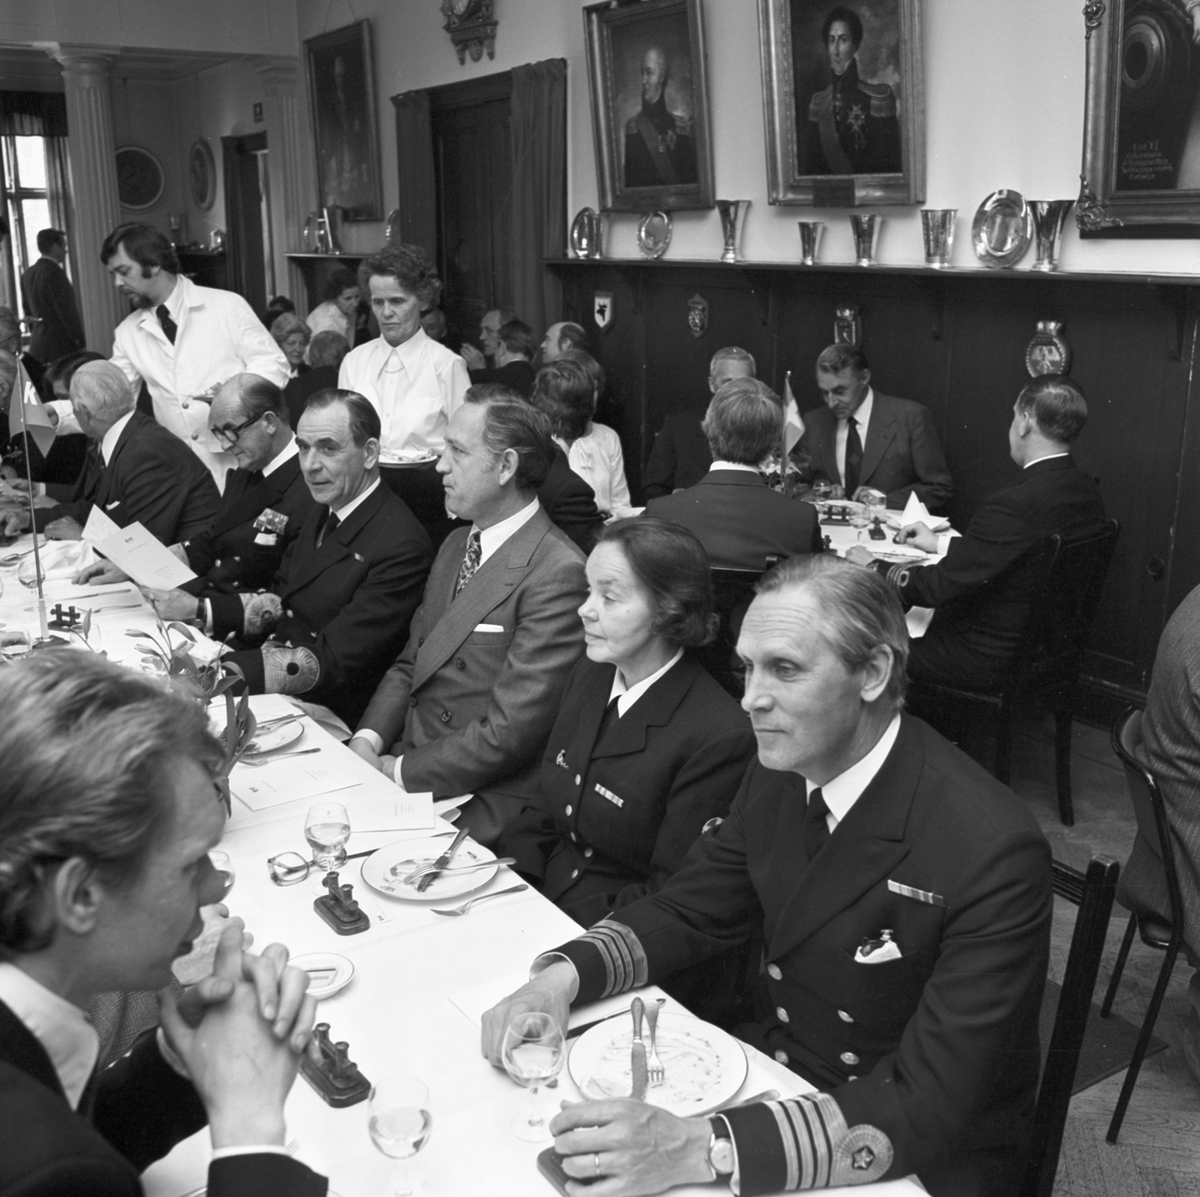 Bilden visar personal från Marinen och Karlskronavarvet på en middag efter torpedbåten Stömstads T-141 sjösättning.
Mannen till höger är chefen för Sydkustens örlogsbas, kommendör av 1. graden Lennart Ahrén. Längre till vänster i samma rad syns  chefen för försvarets materielverks huvudavdelning för marinmateriel, konteramiral Gunnar Grandin och marinchefen, viceamiral Bengt Lundvall.